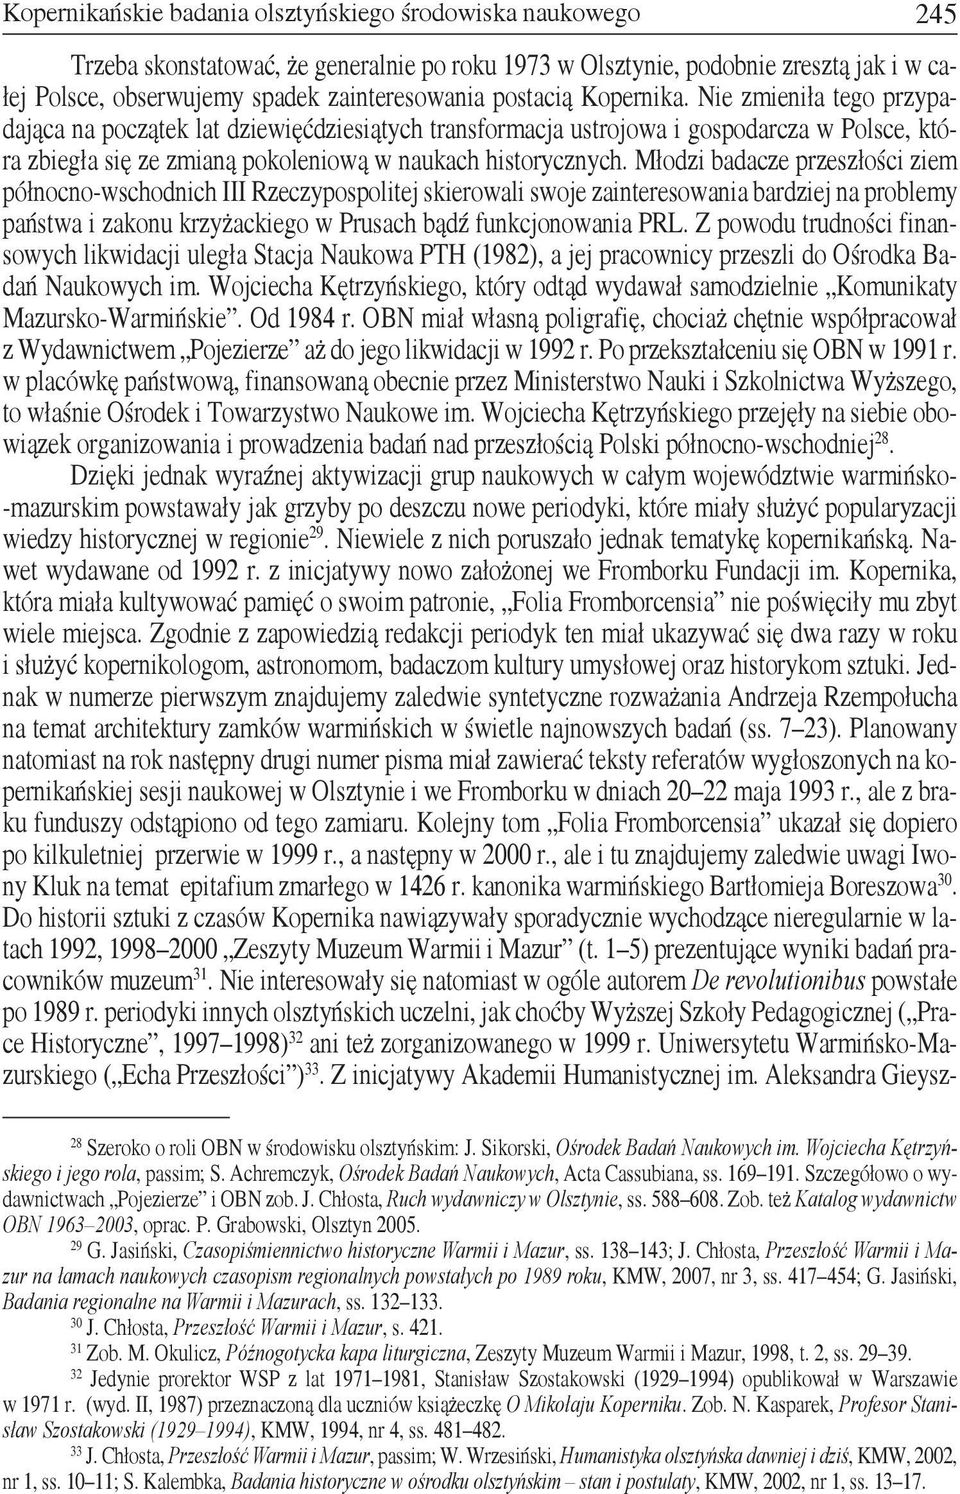 Młodzi badacze przeszłości ziem północno-wschodnich III Rzeczypospolitej skierowali swoje zainteresowania bardziej na problemy państwa i zakonu krzyżackiego w Prusach bądź funkcjonowania PRL.